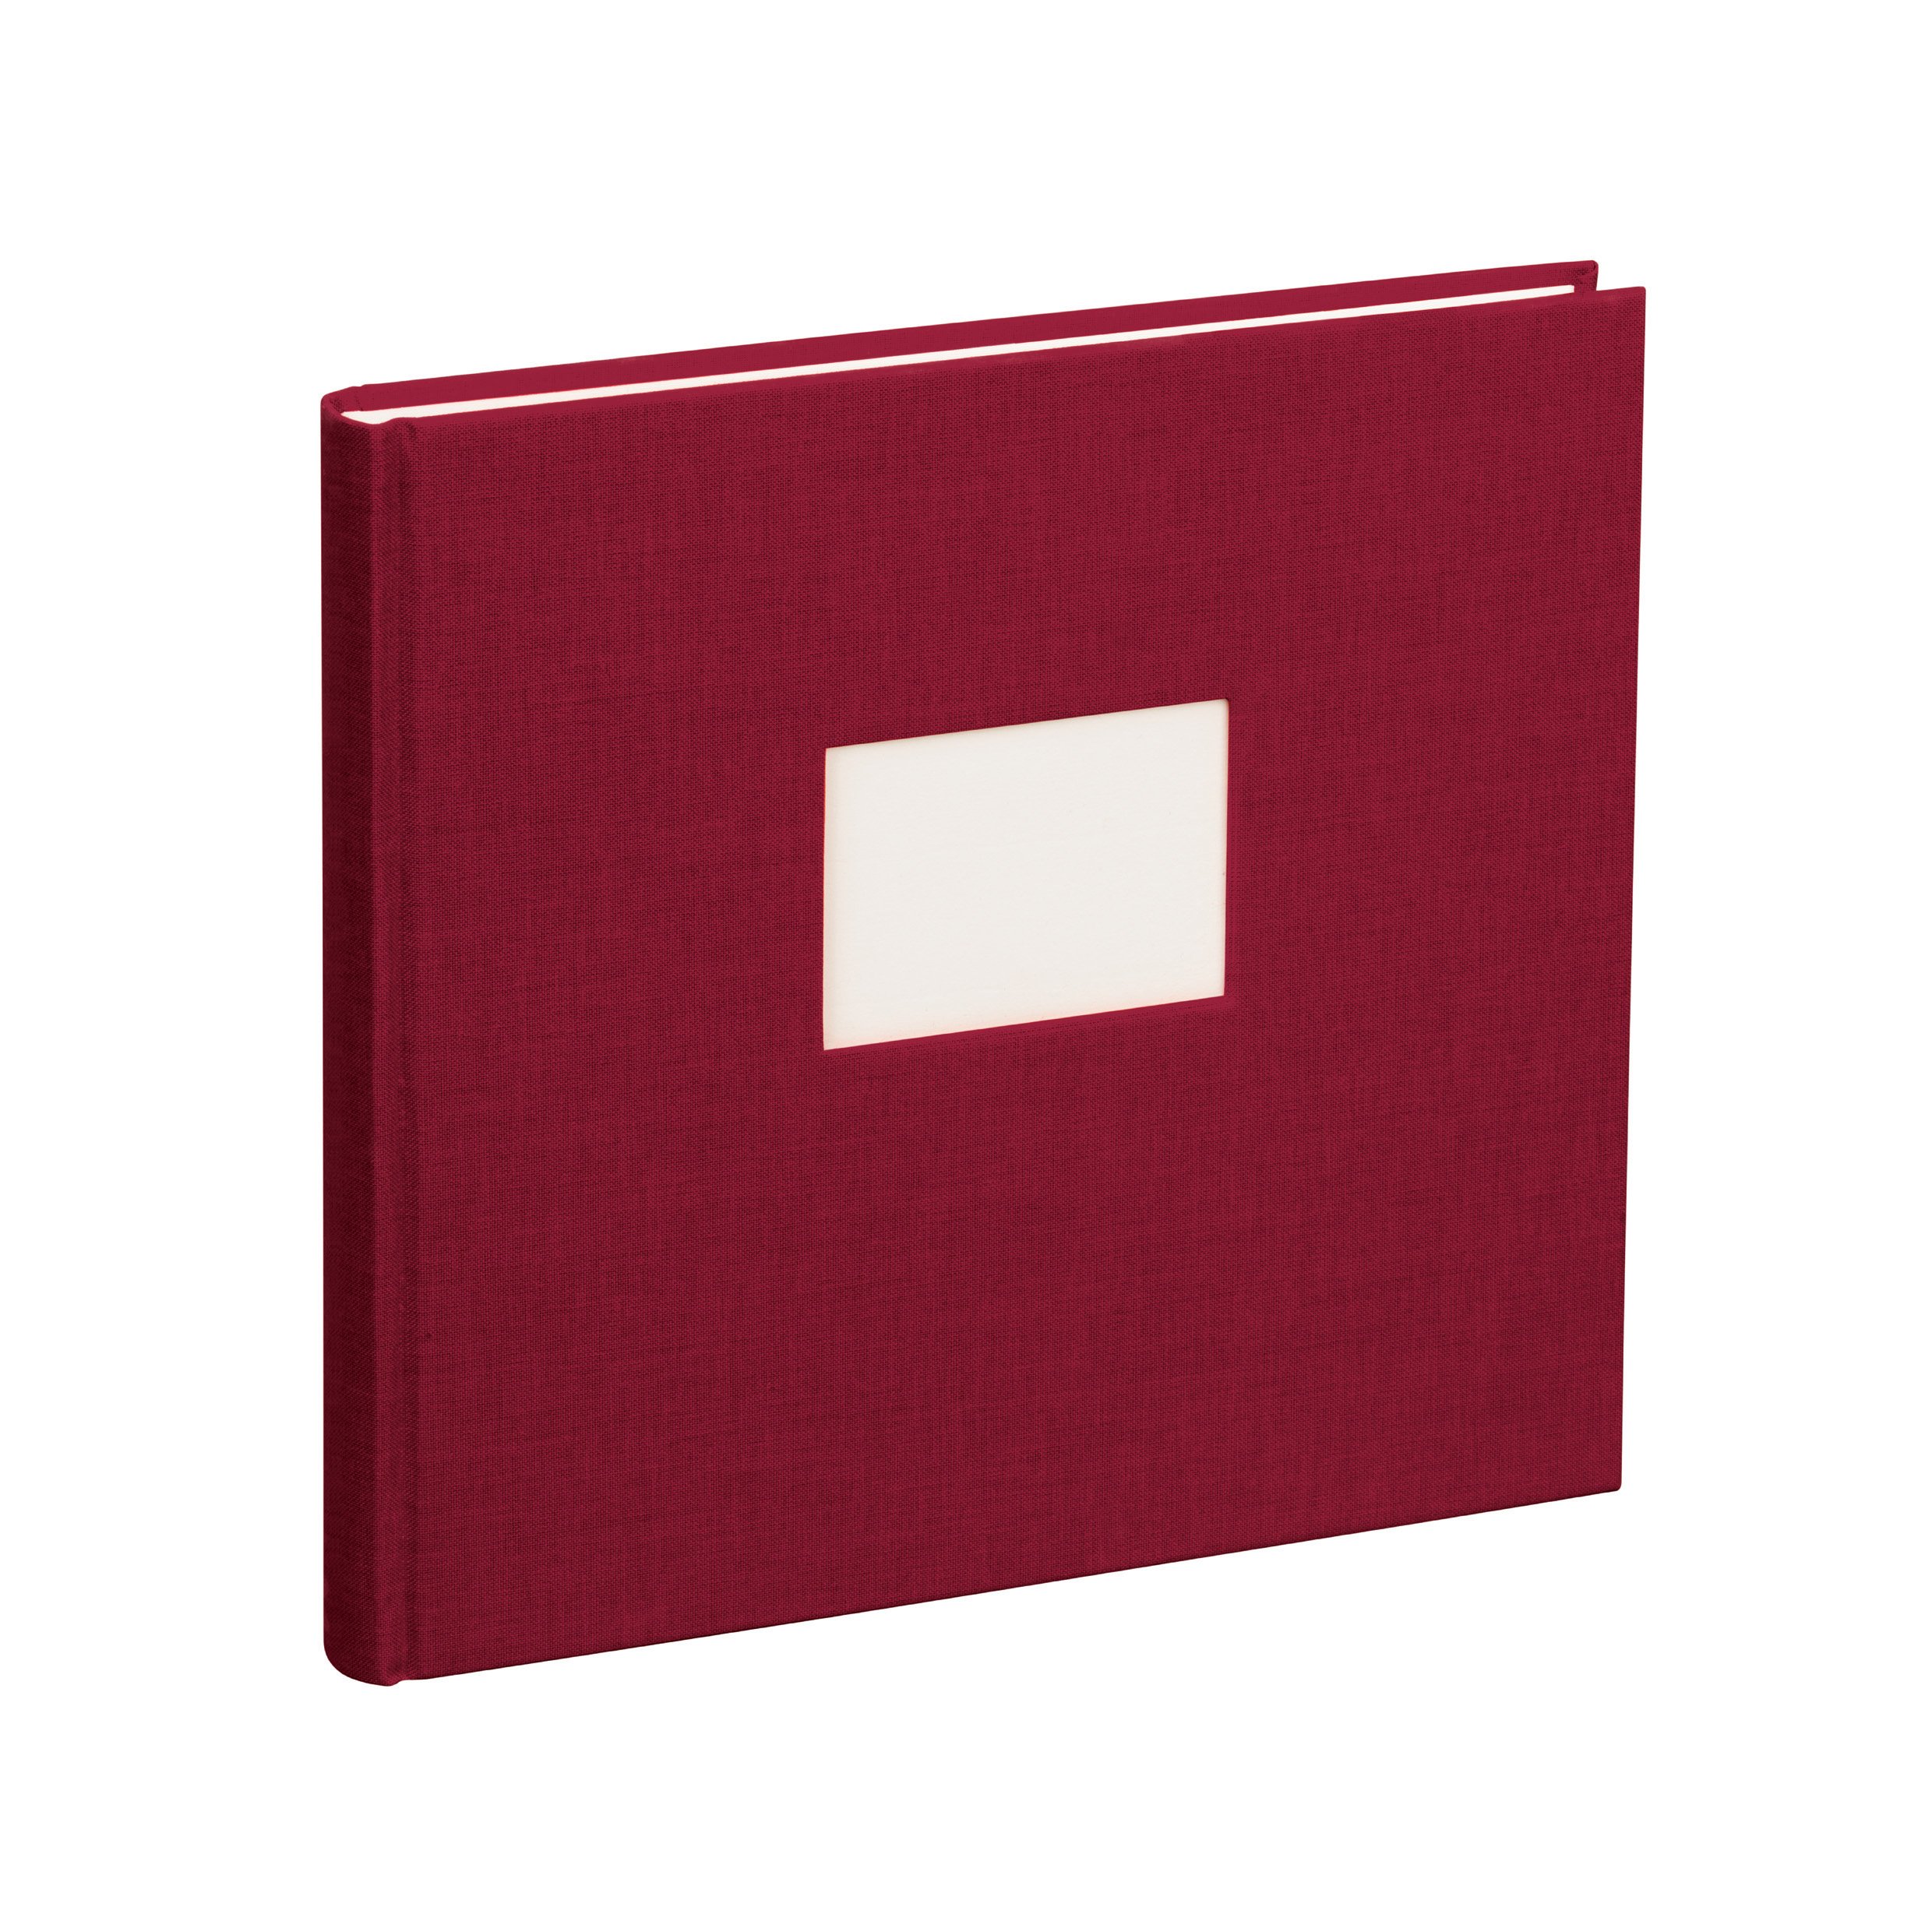 Semikolon 353525 Gästebuch – 25 x 23 cm – mit 180 blanko Seiten zum Selbstgestalten, Lesezeichen – burgundy dunkel-rot